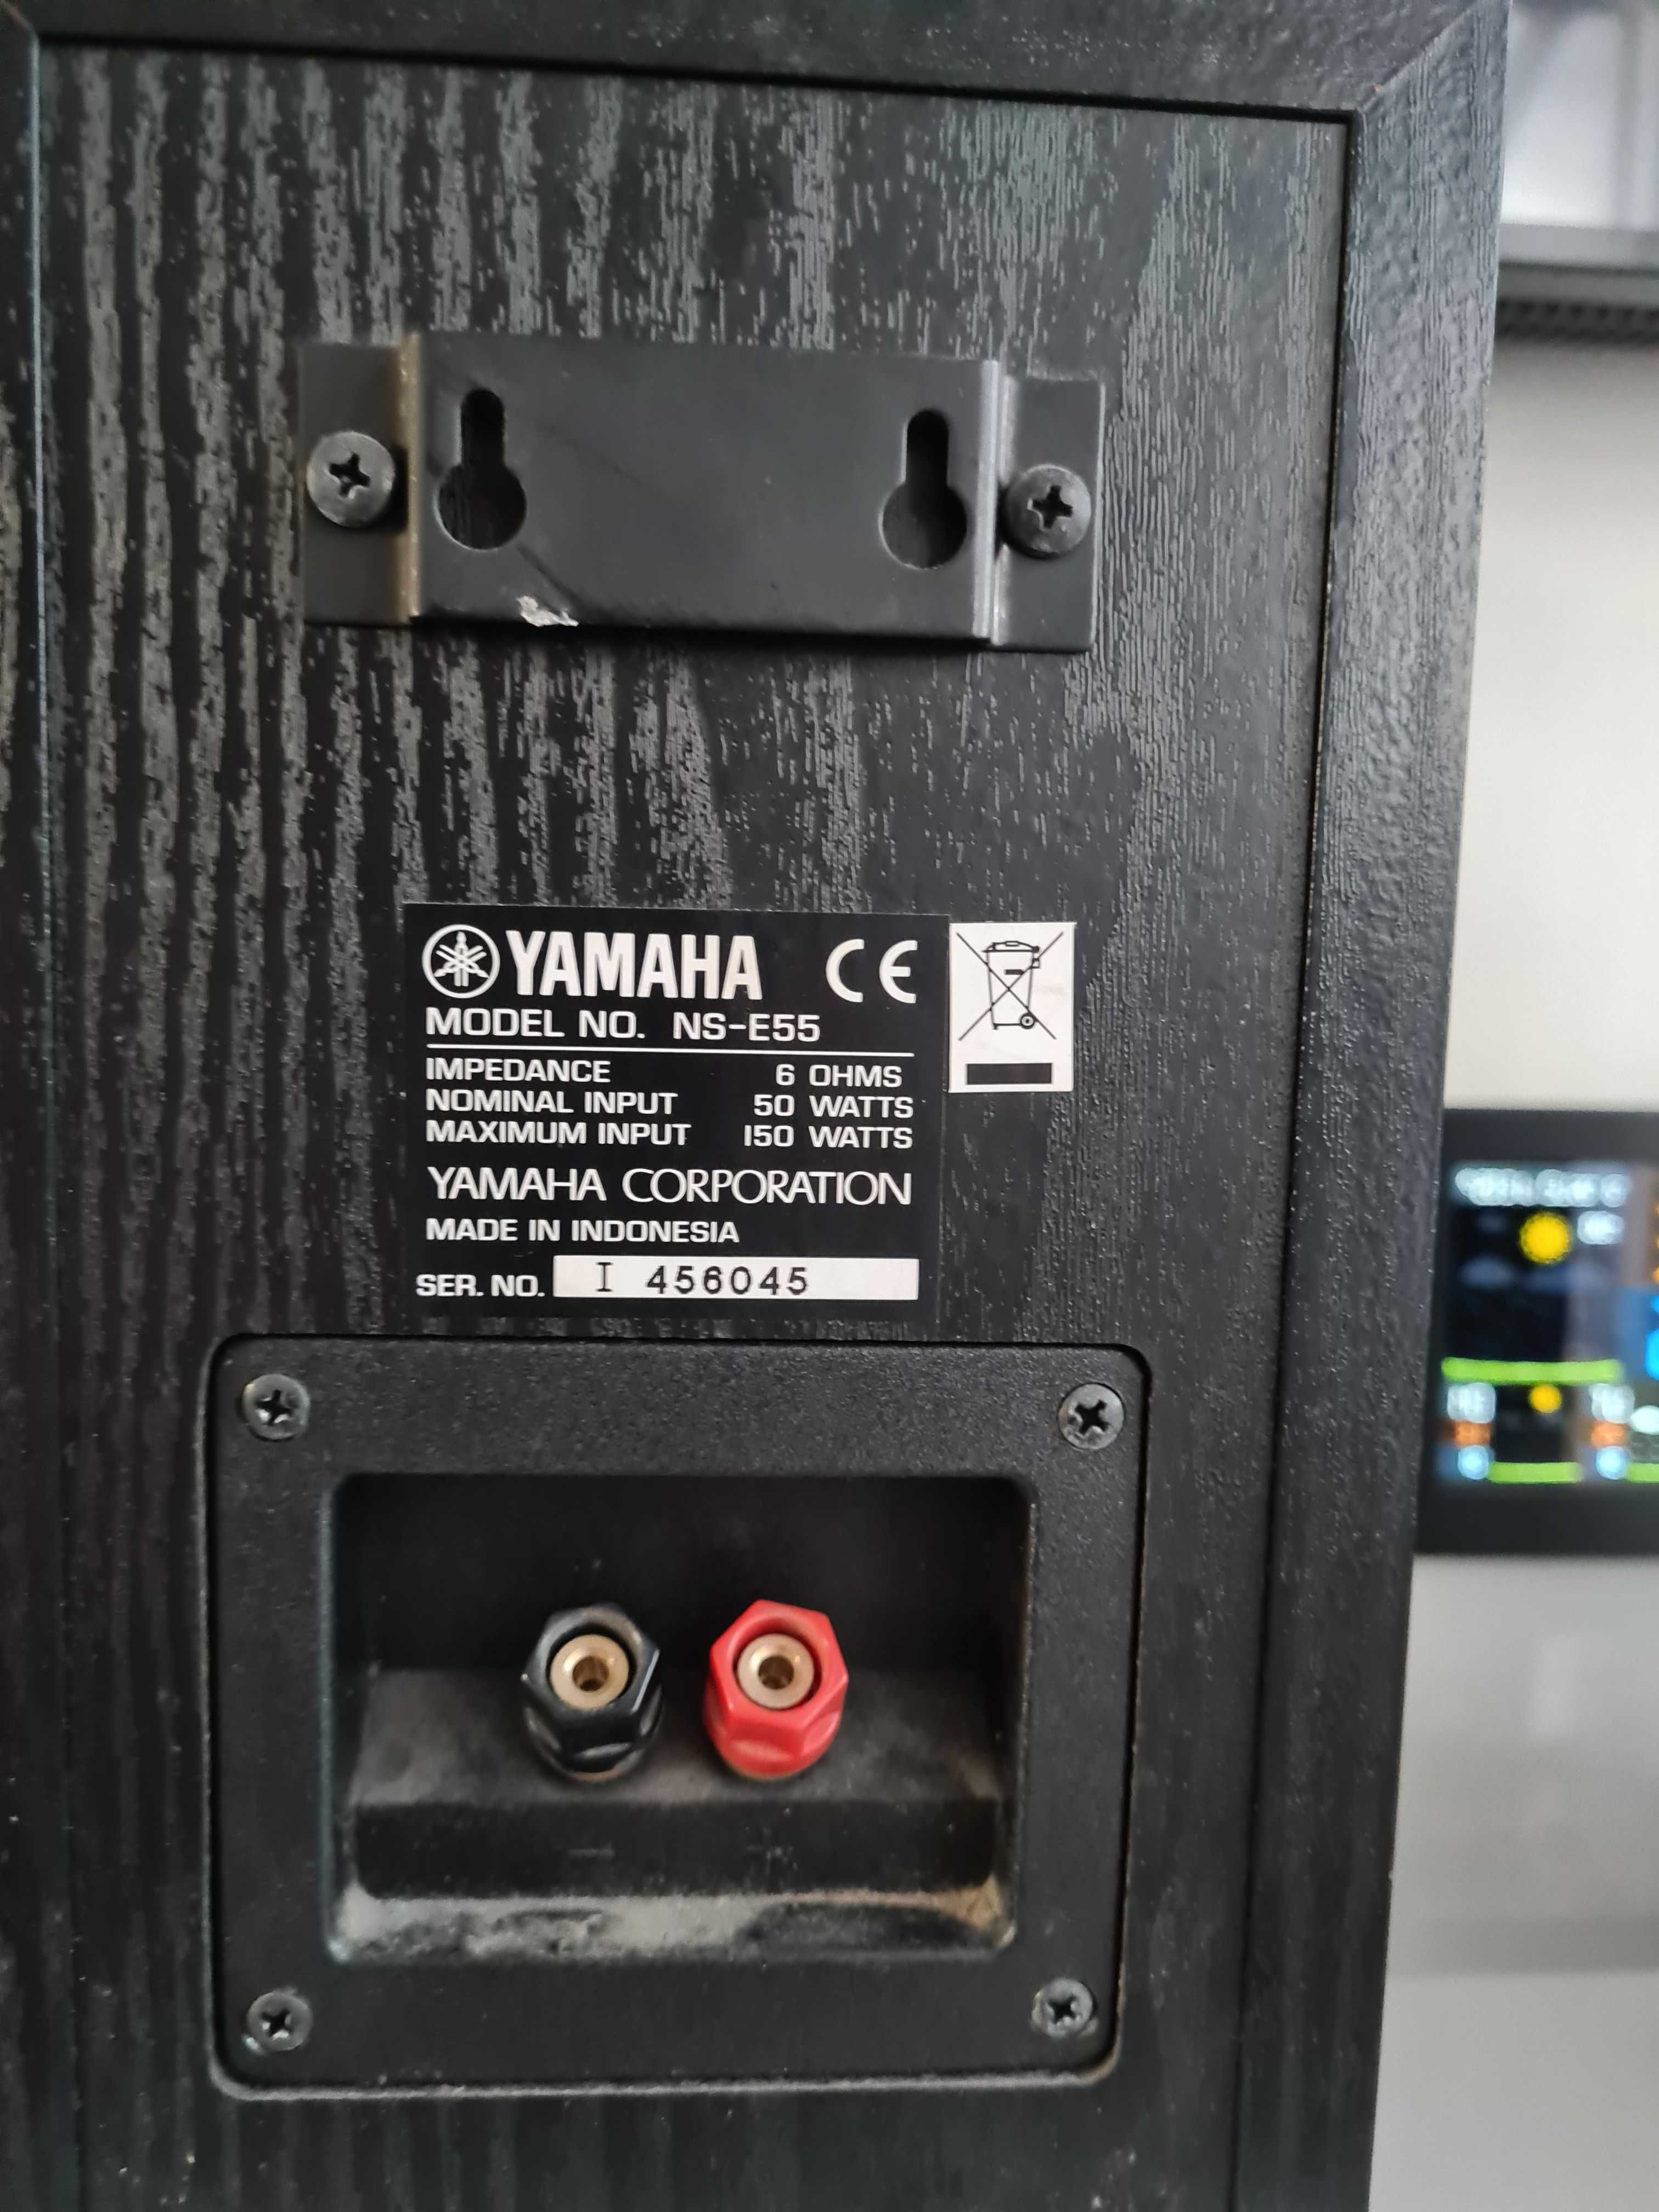 OKAZJA Glosniki Yamaha Ns e55 kolumny monitory kino domowe stereo